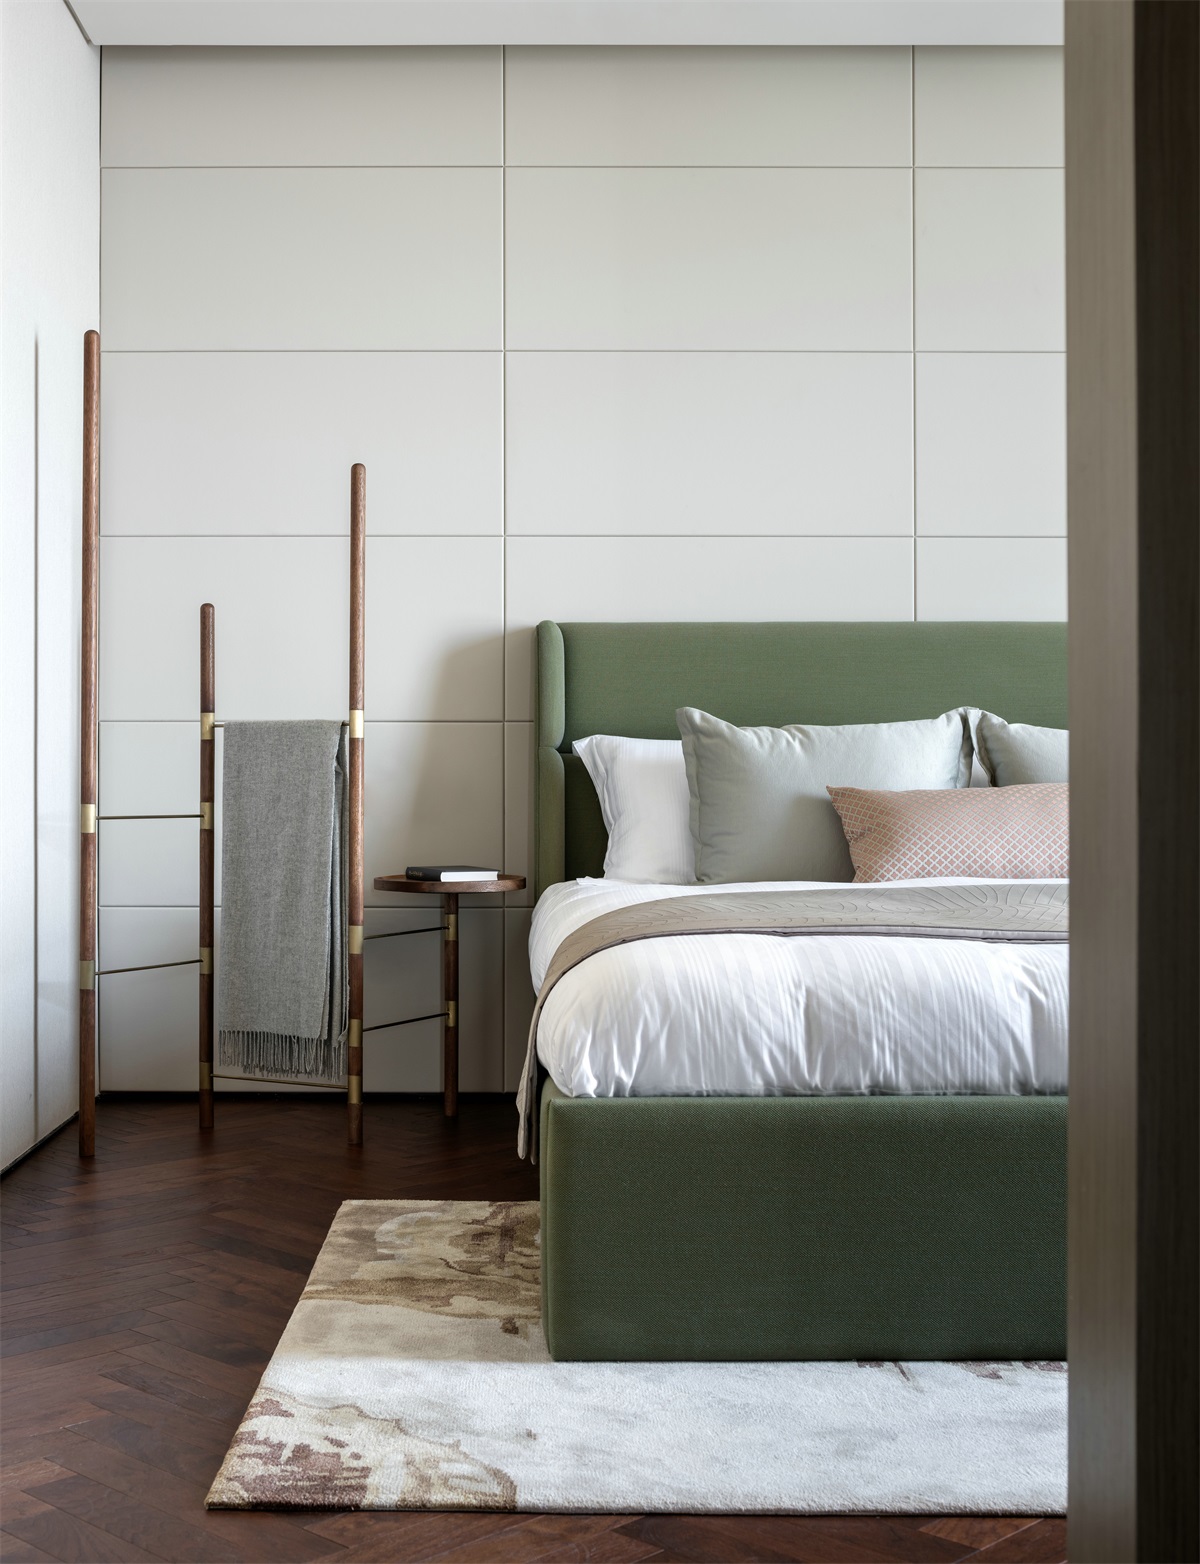 次卧以淡雅的色调为主，果木绿双人床营造出温婉、舒适的休憩空间。